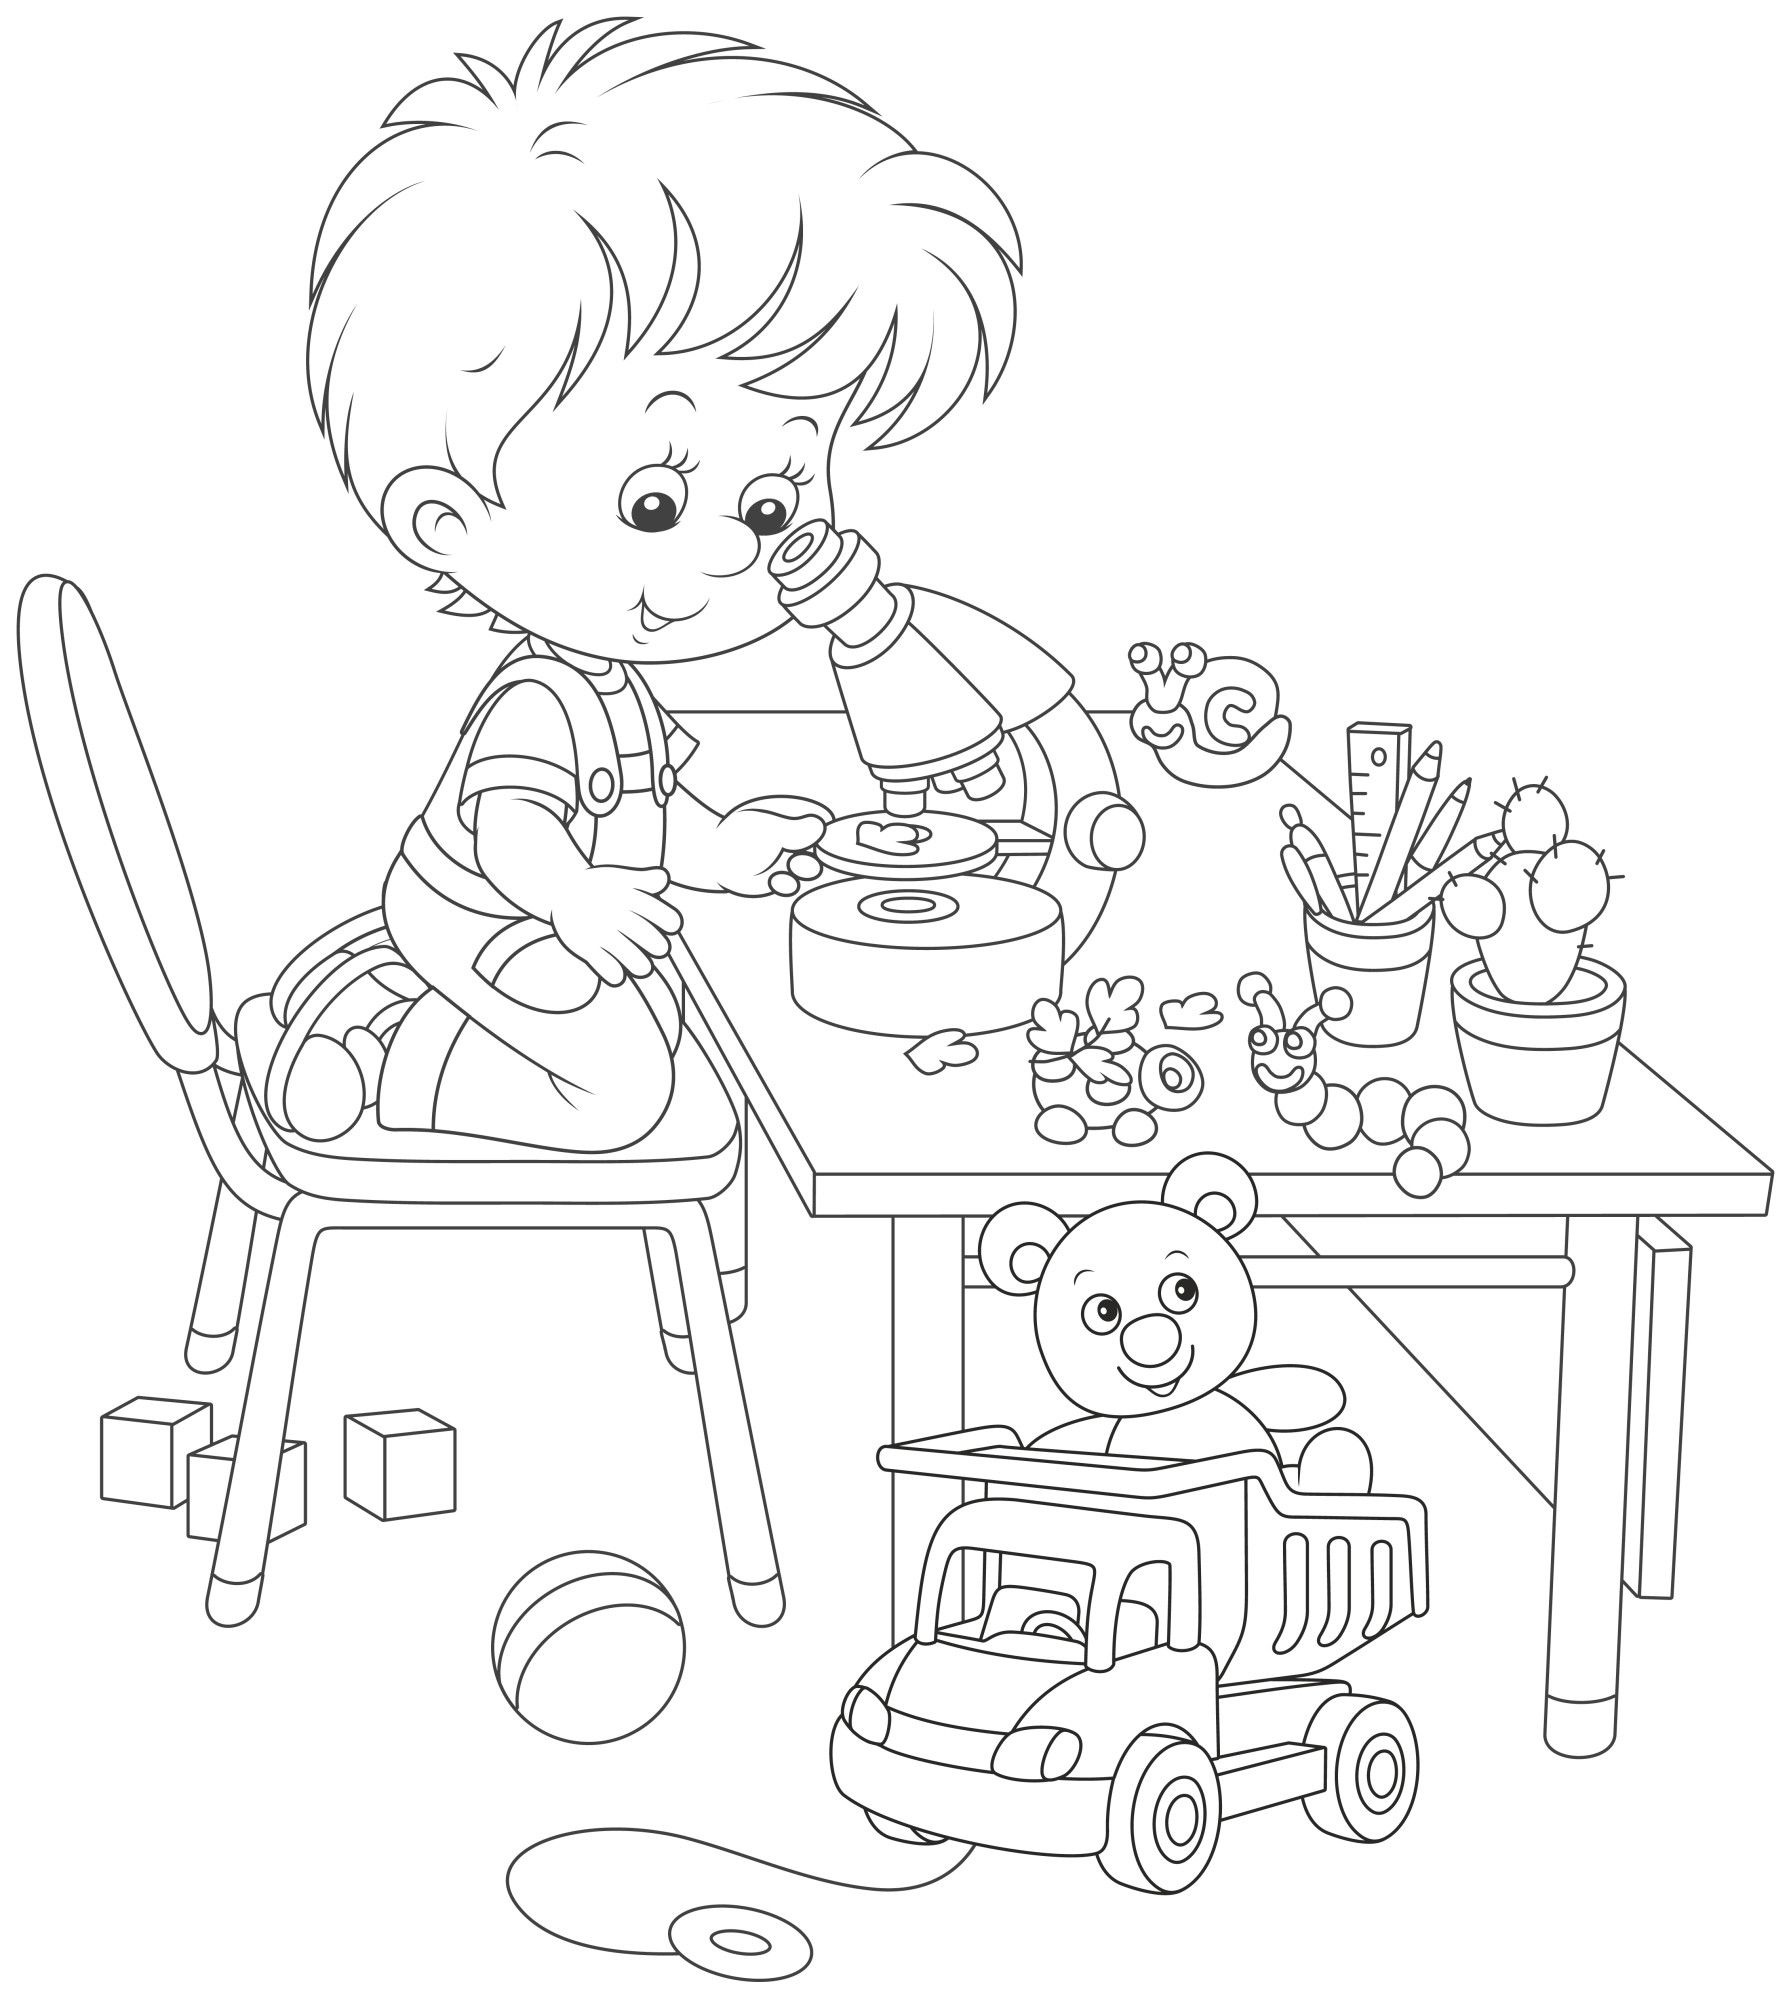 Раскраска для детей: маленький мальчик играет за столом с игрушками